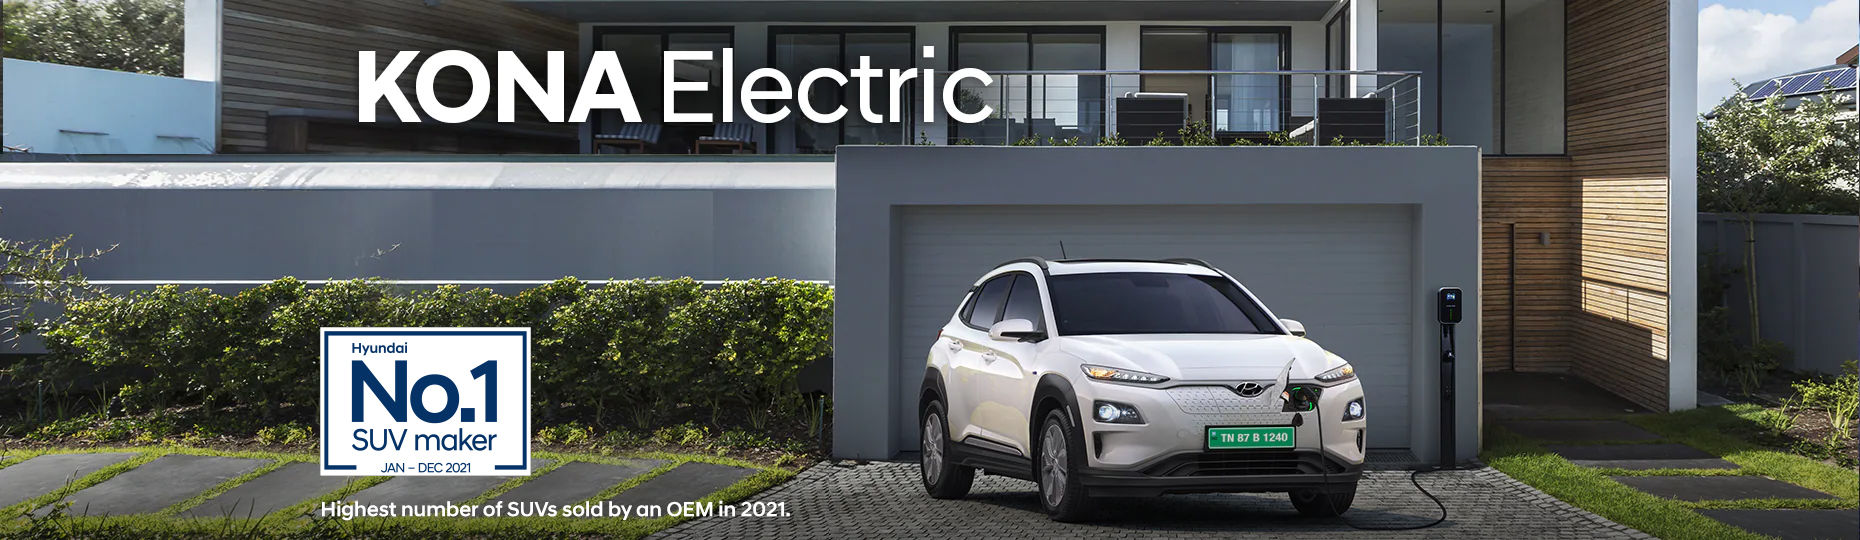 Hyundai Kona electric charging at home